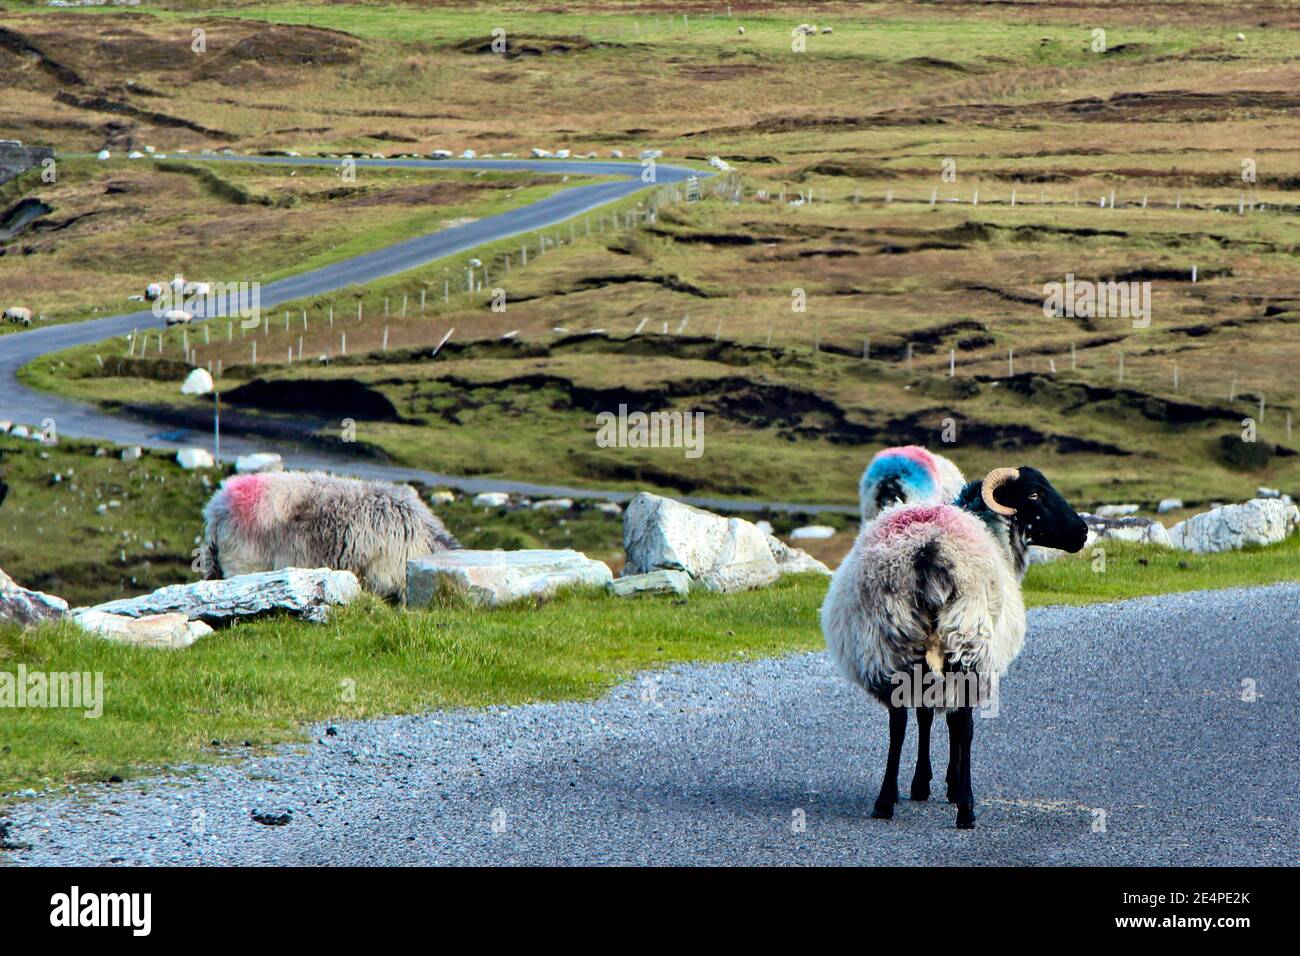 Photo spectaculaire des routes sinueuses du comté de Mayo Irlande avec des moutons et des béliers marchant dans la route. Banque D'Images